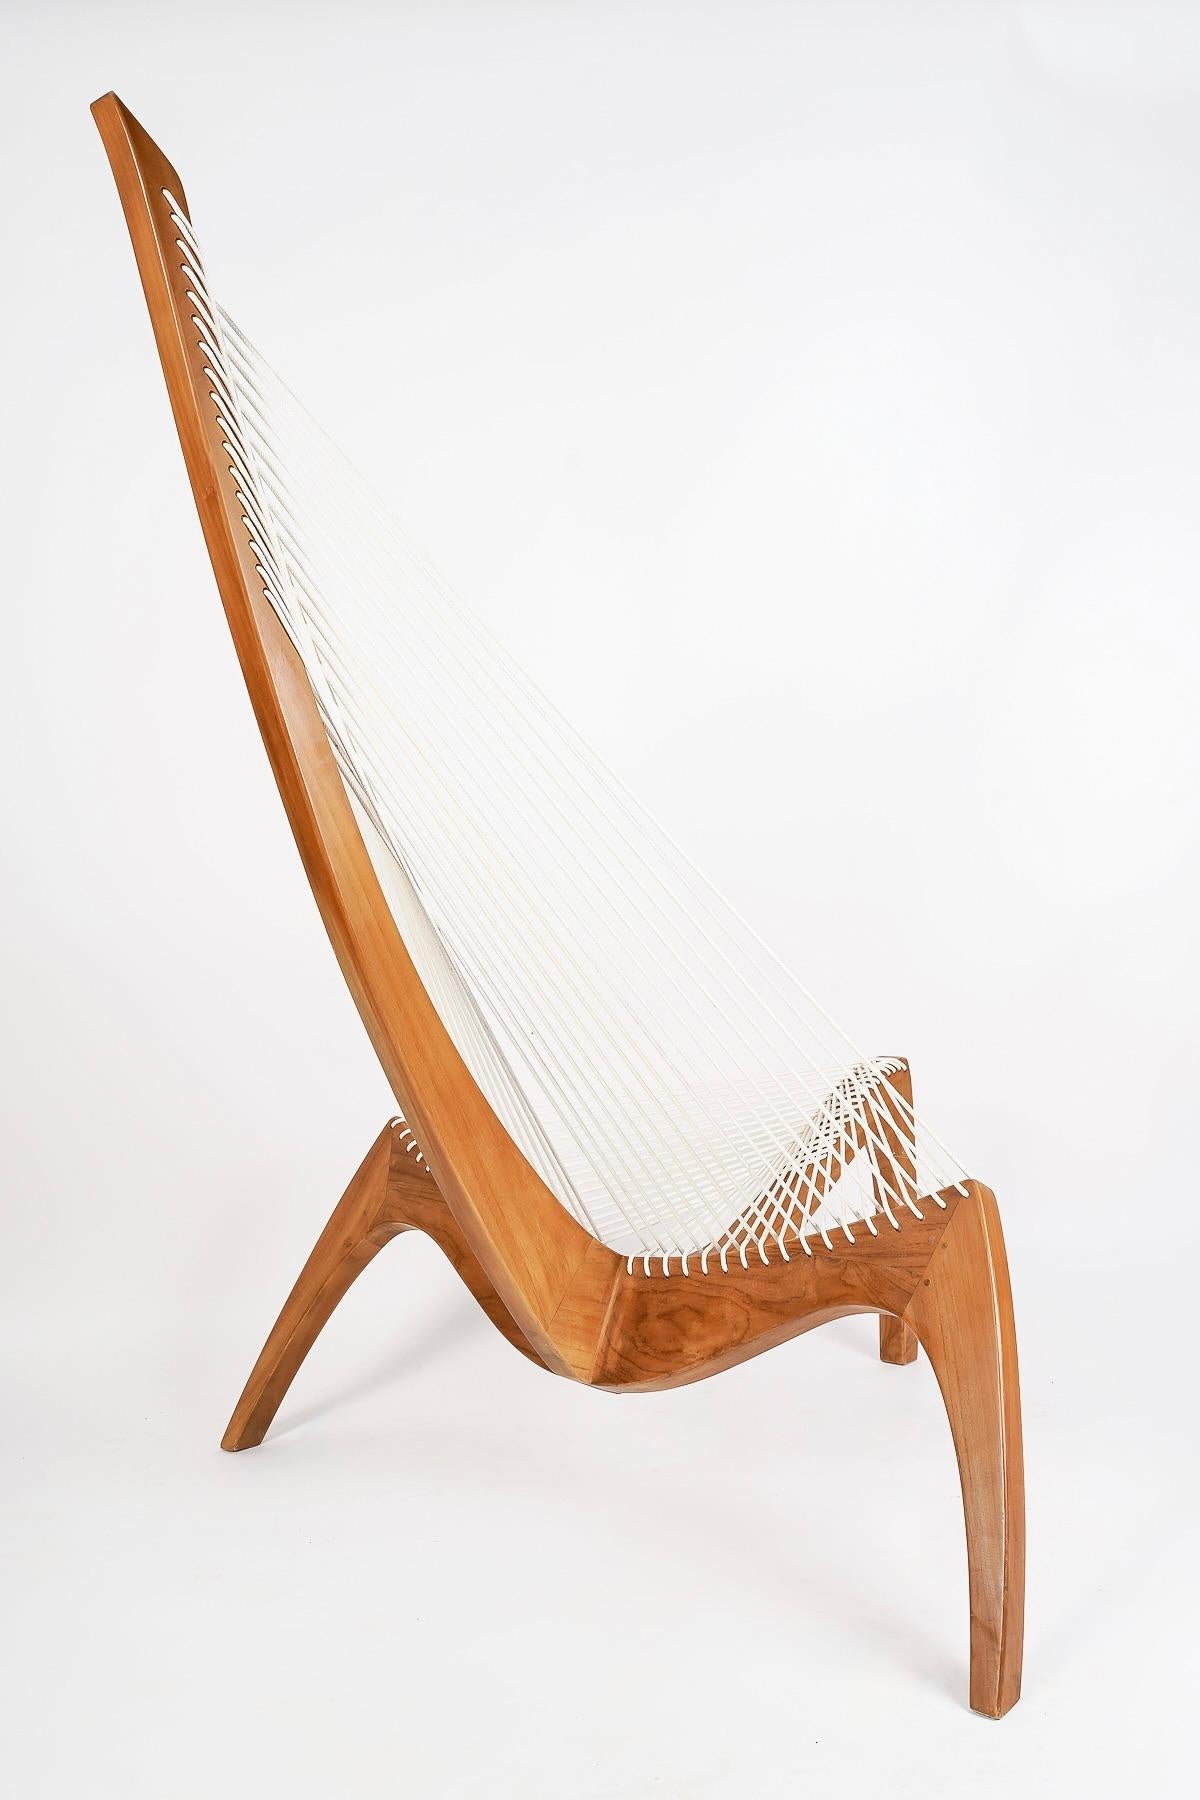 1970 Pair harp chair by Jørgen Høvelskov for Christensen & Larsen Møbelhandværk. 2